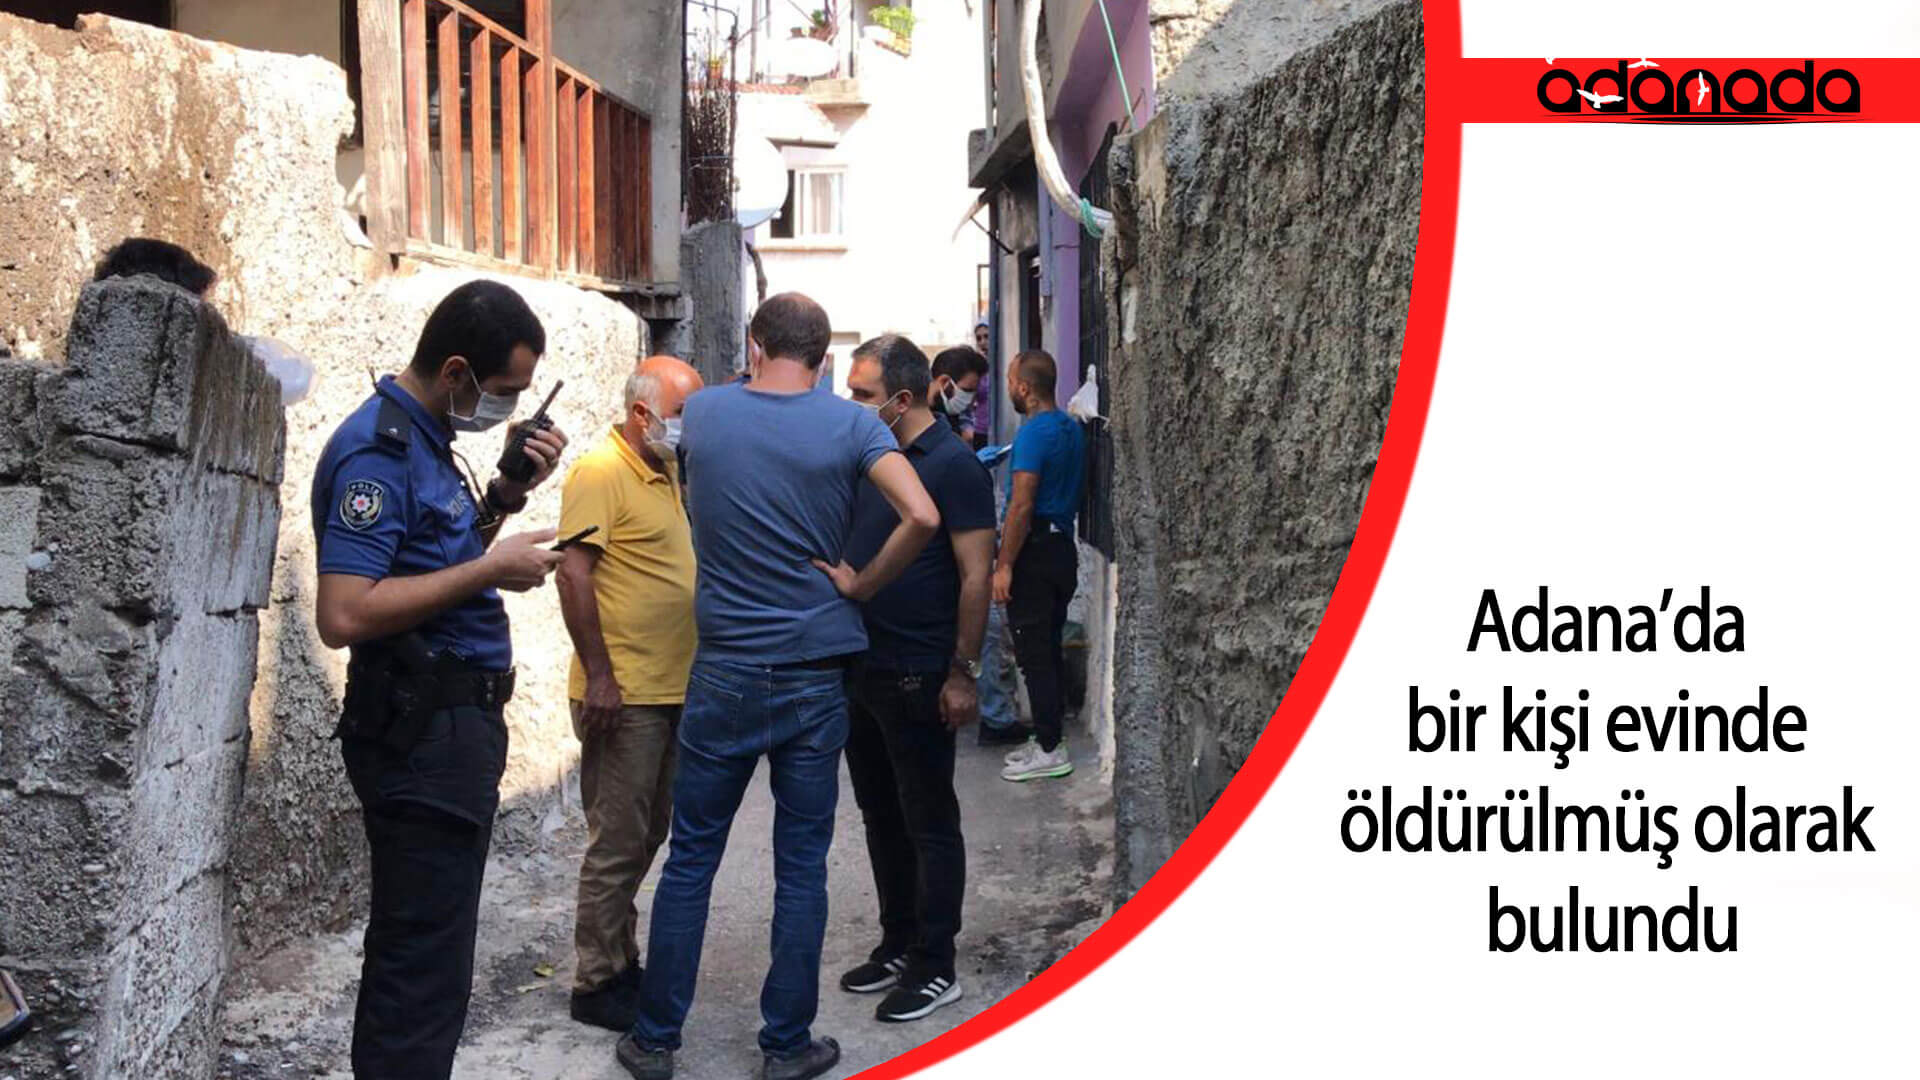 Adana’da bir kişi evinde öldürülmüş olarak bulundu